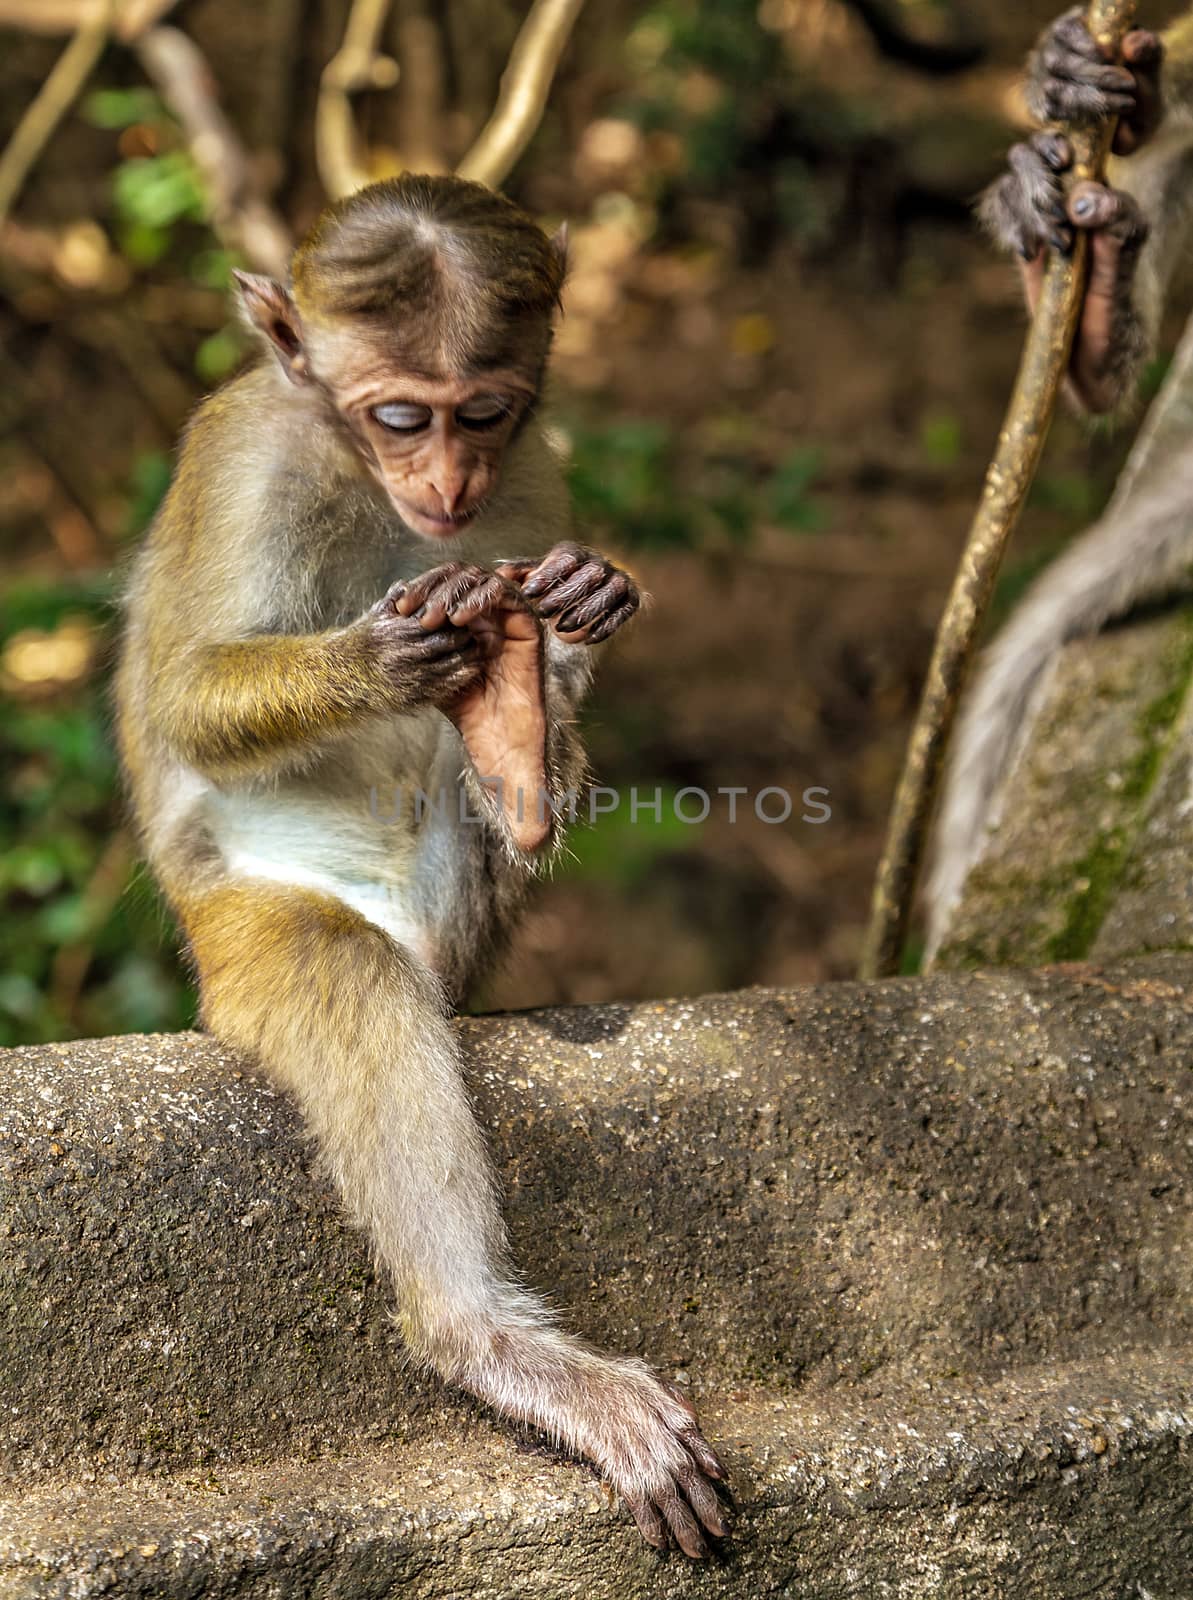 Sri Lankan Monkeys Toque macaque